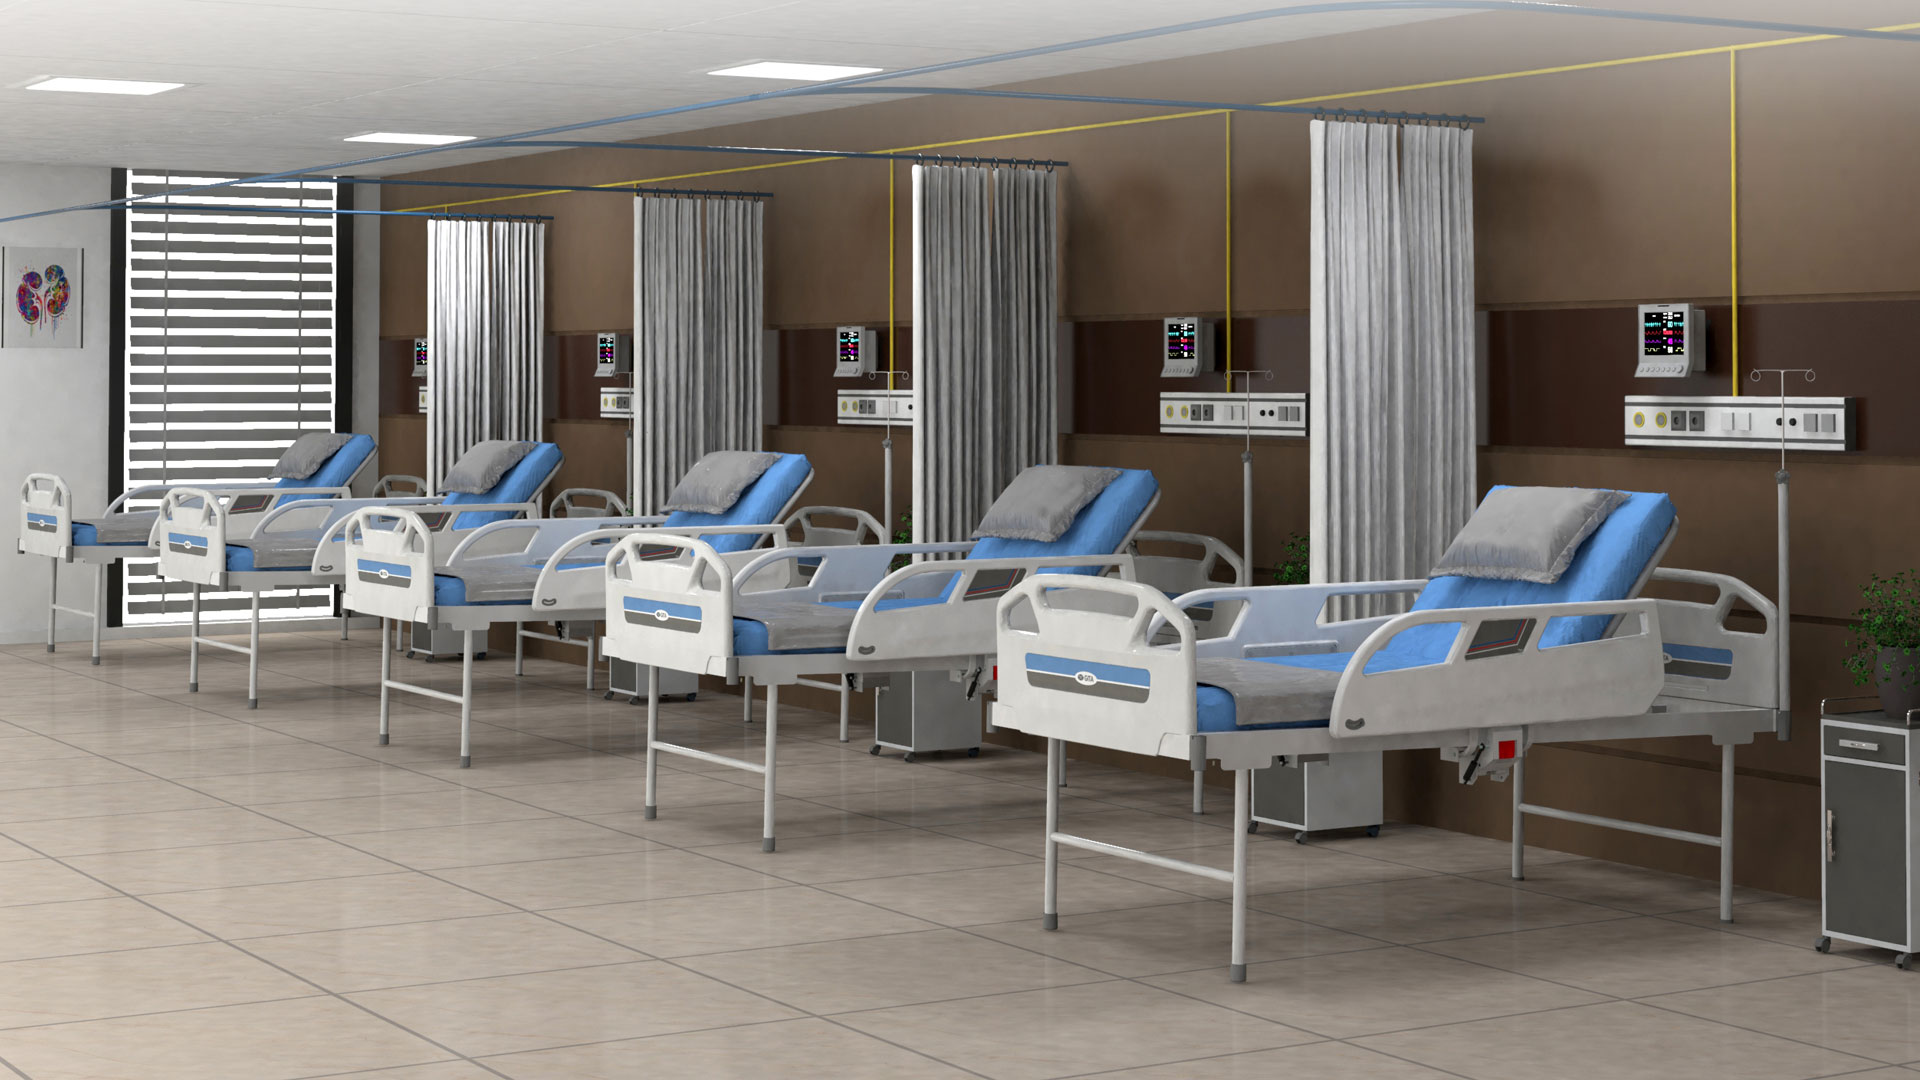 semi fowler hospital bed